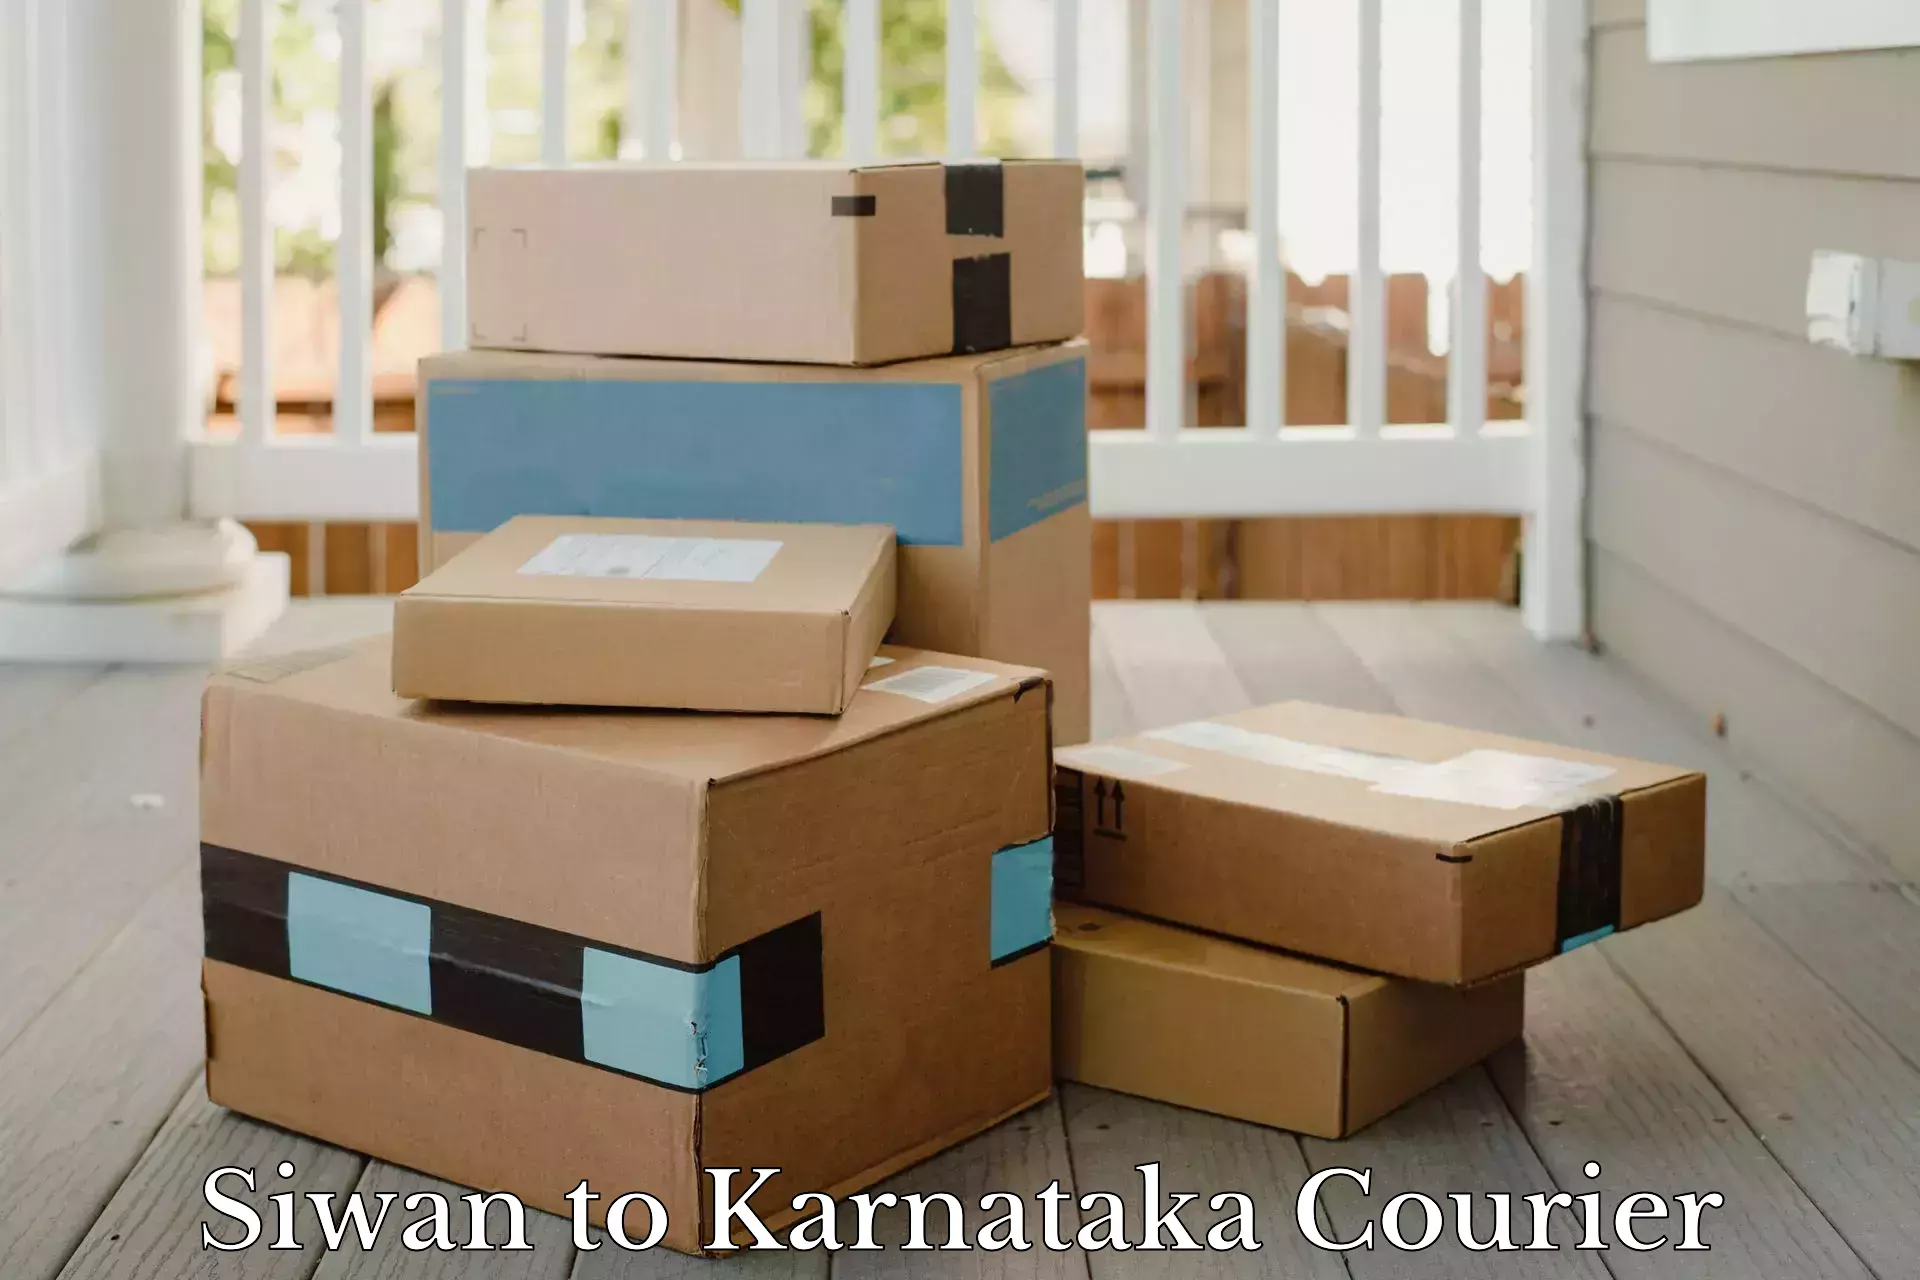 Customer-centric shipping Siwan to Karnataka